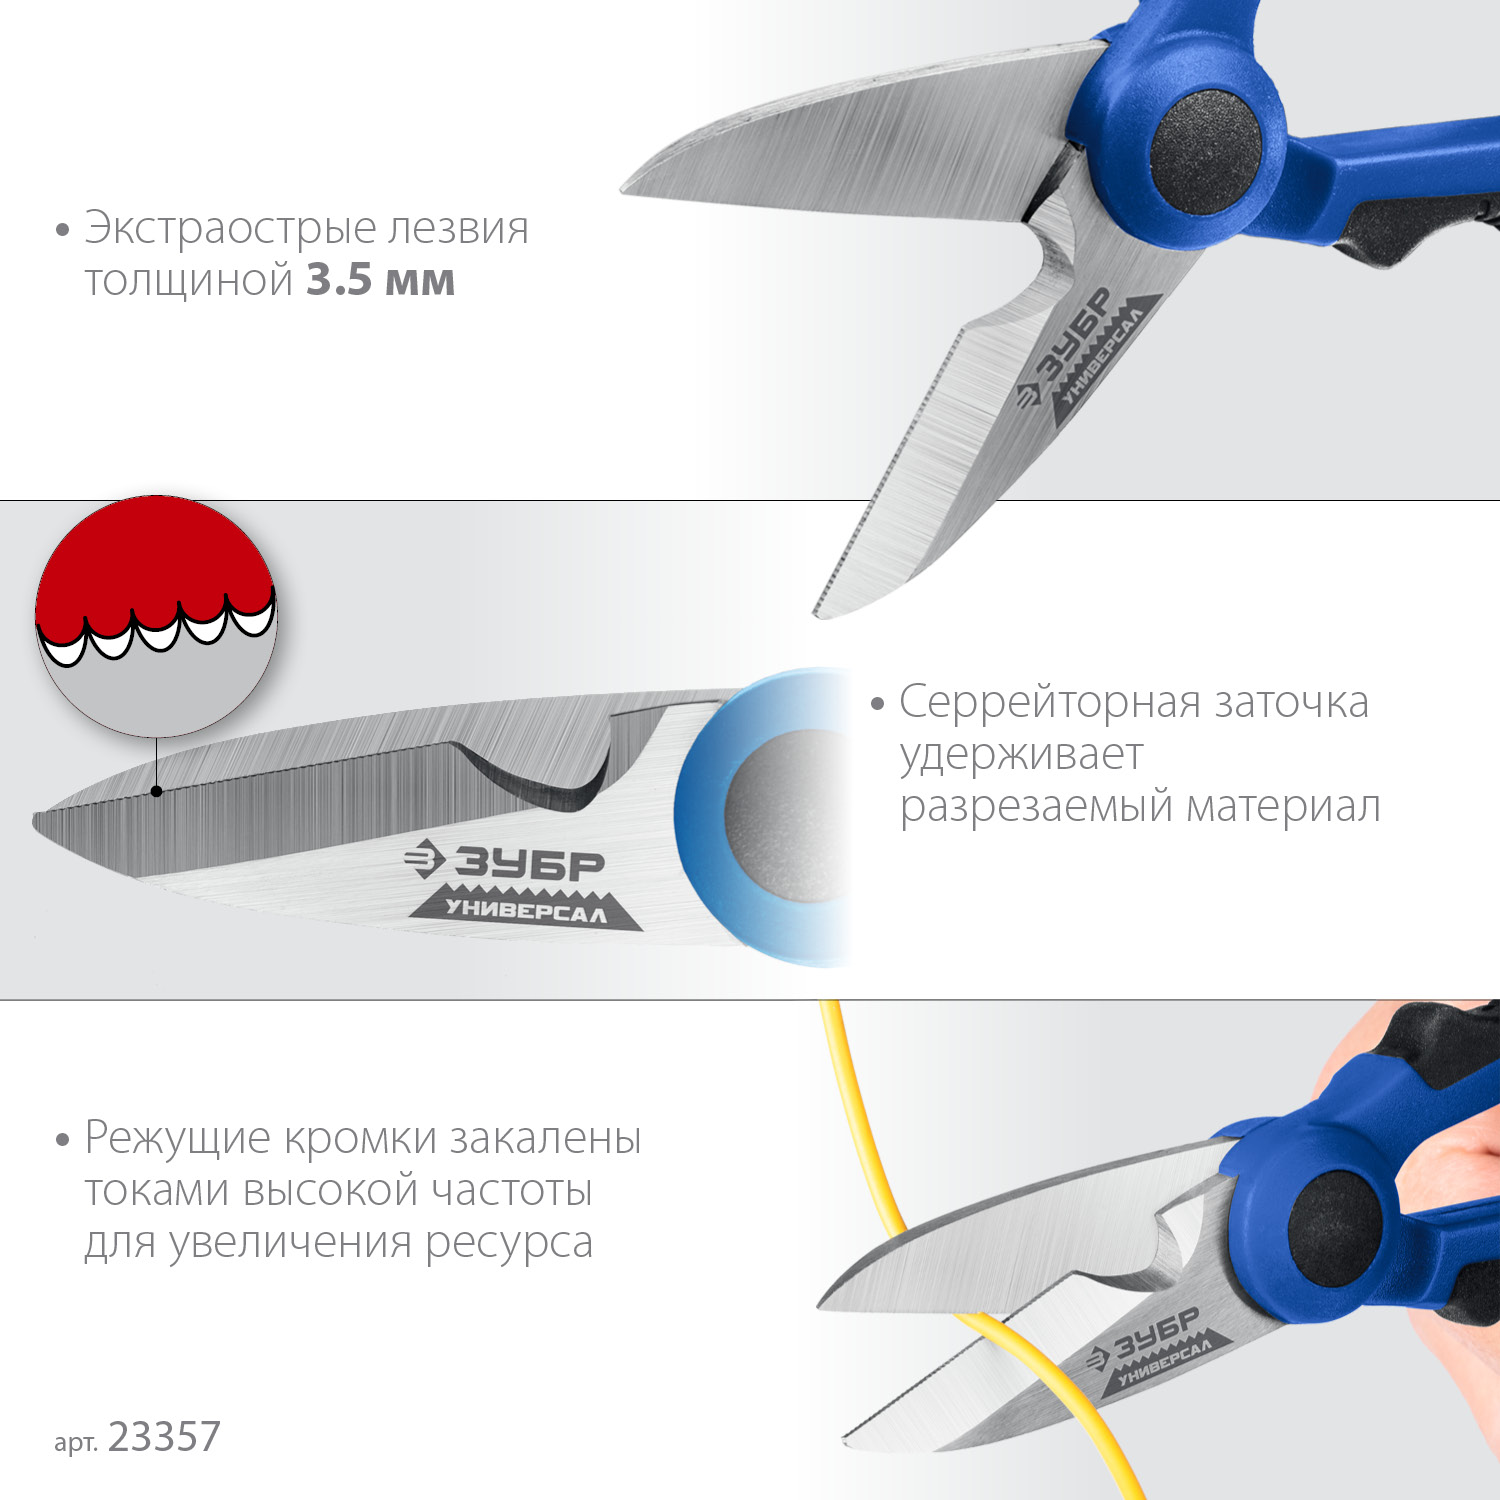 ЗУБР Универсал, 145 мм, ножницы электрика универсальные, Профессионал (23357)